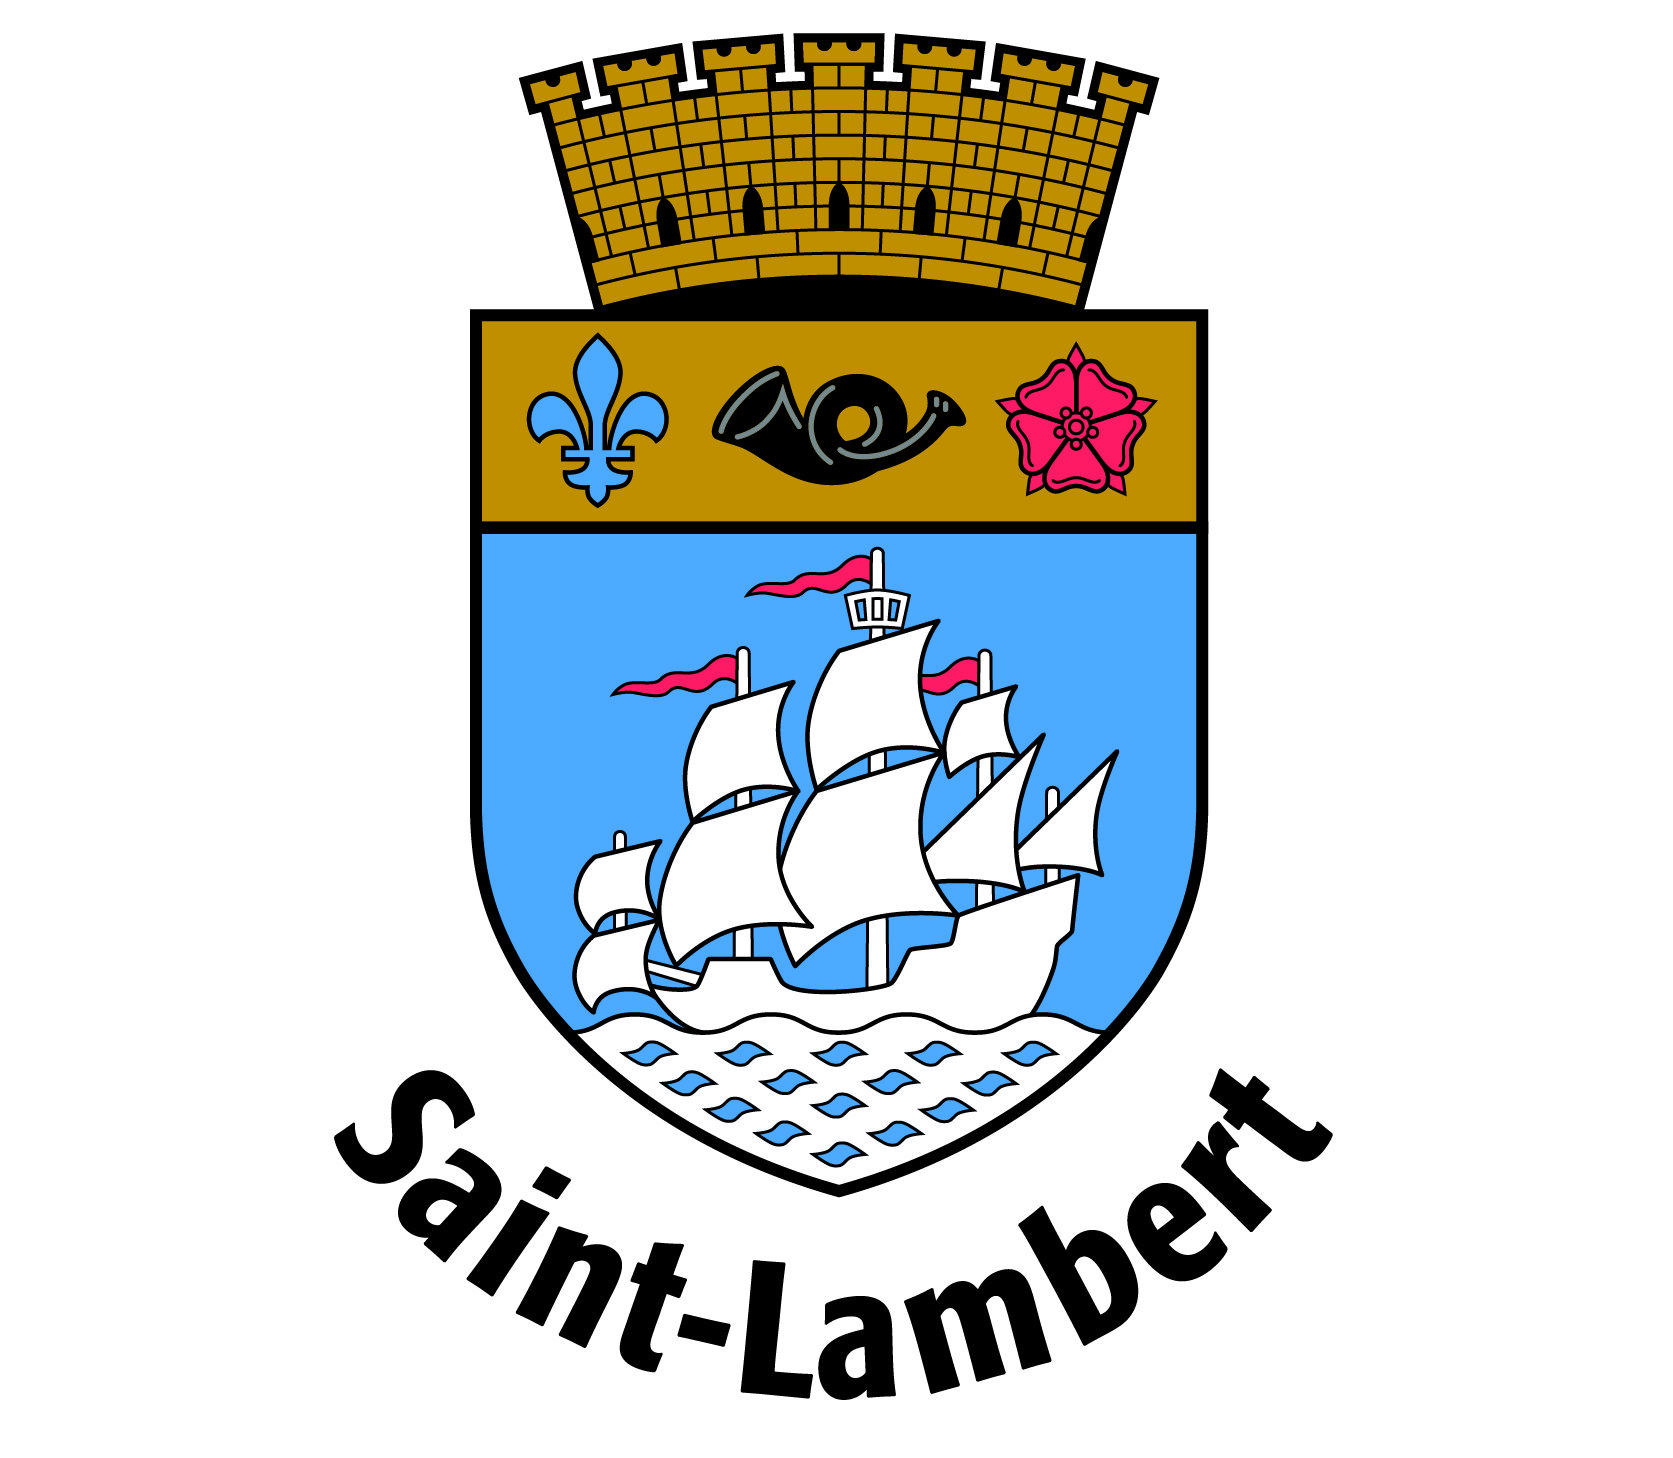 428-saint-lambert-17077559304124.jpeg